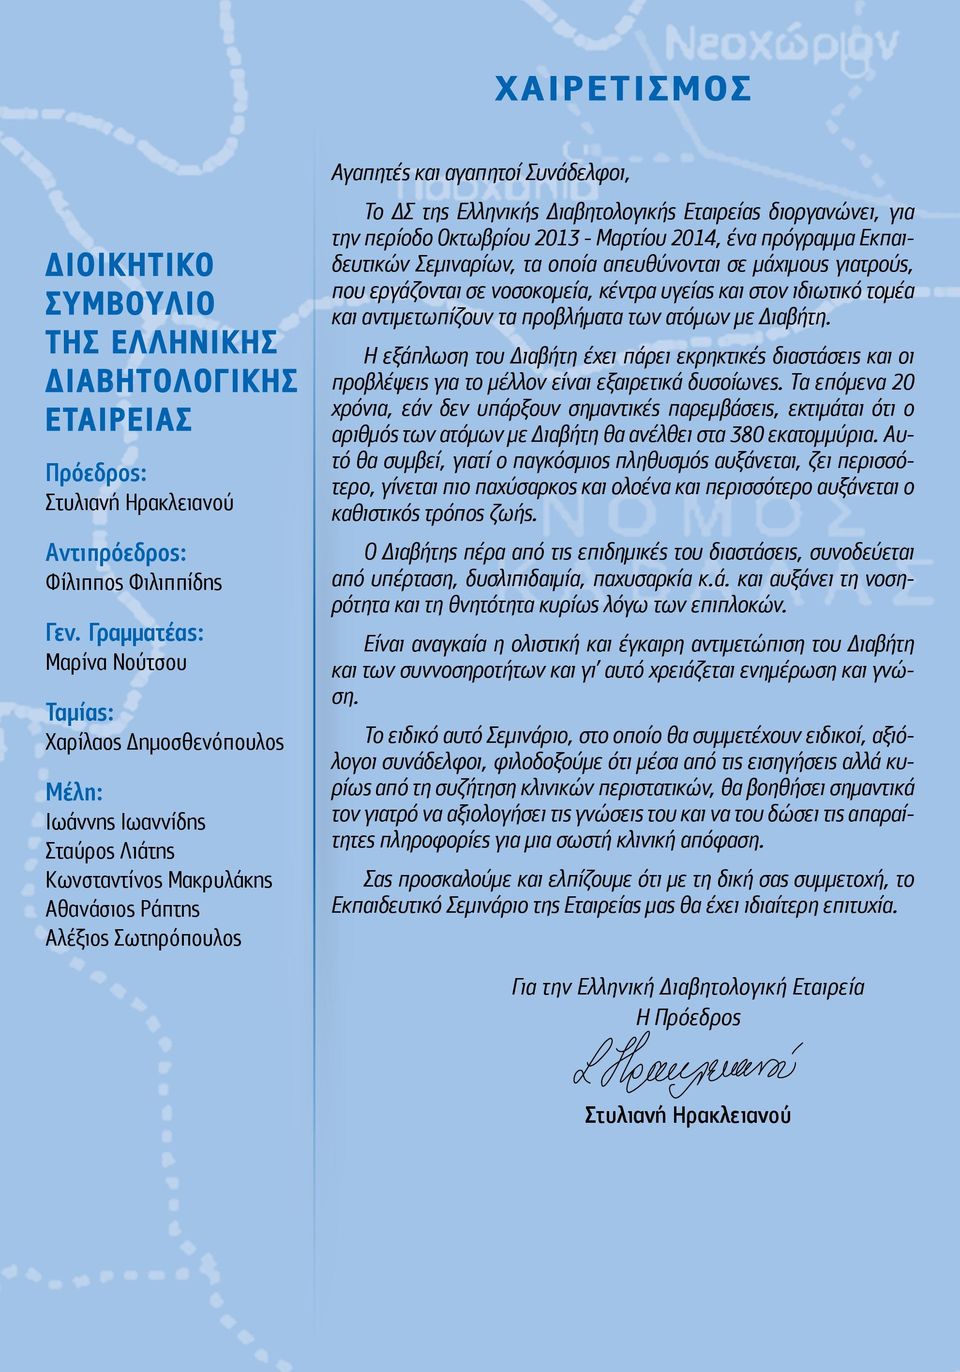 ΔΣ της Ελληνικής Διαβητολογικής Εταιρείας διοργανώνει, για την περίοδο Οκτωβρίου 2013 - Μαρτίου 2014, ένα πρόγραμμα Εκπαιδευτικών Σεμιναρίων, τα οποία απευθύνονται σε μάχιμους γιατρούς, που